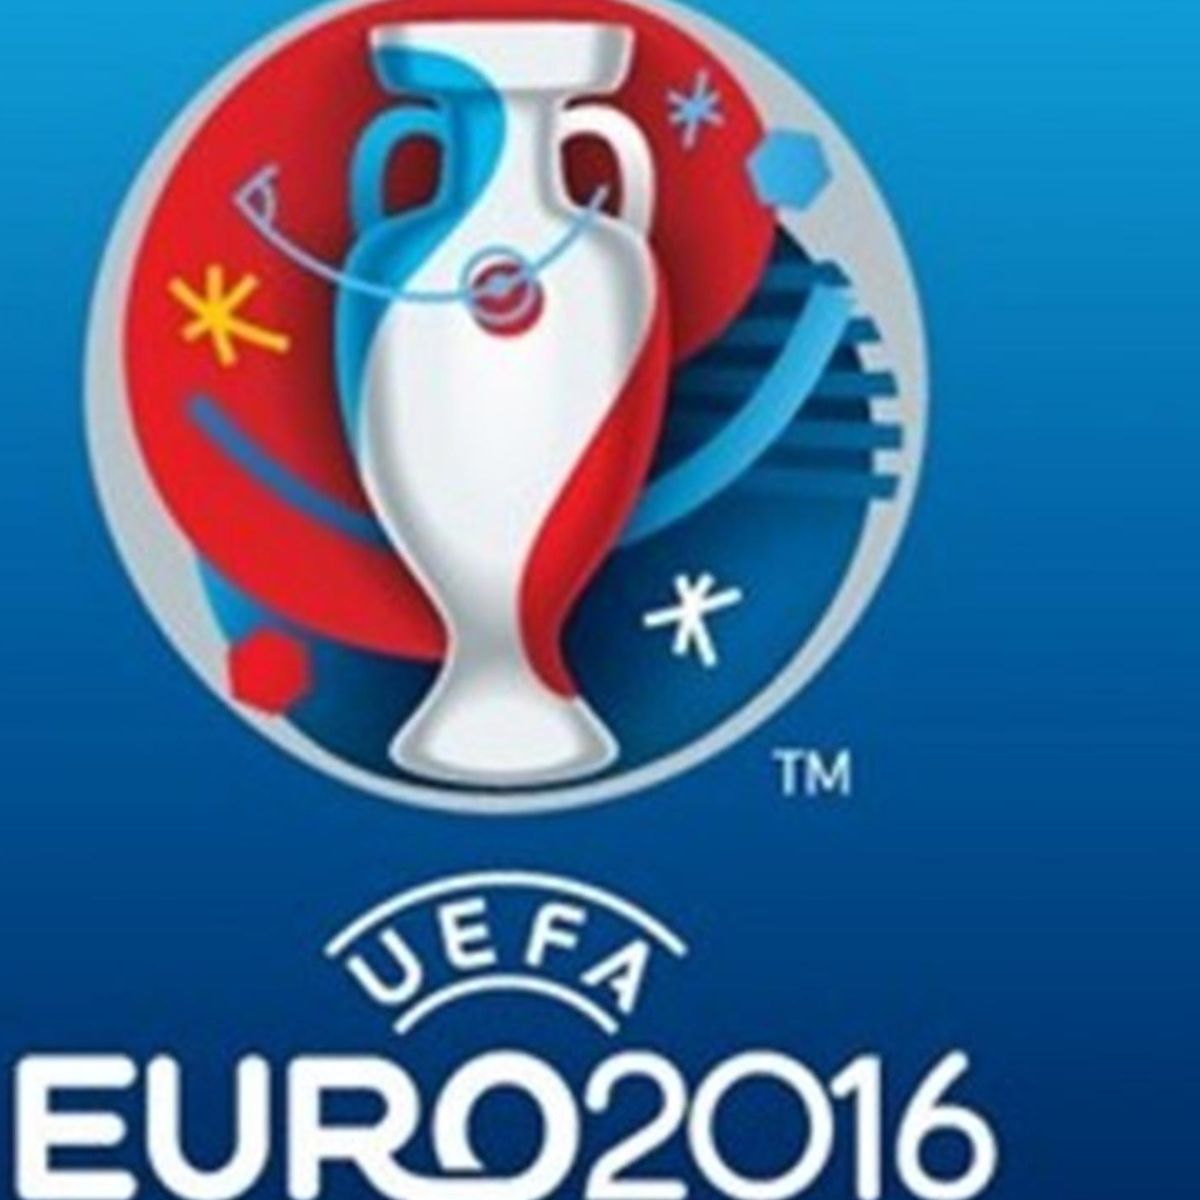 Le Logo De L Euro 16 Devoile Par L Uefa Et Michel Platini Eurosport